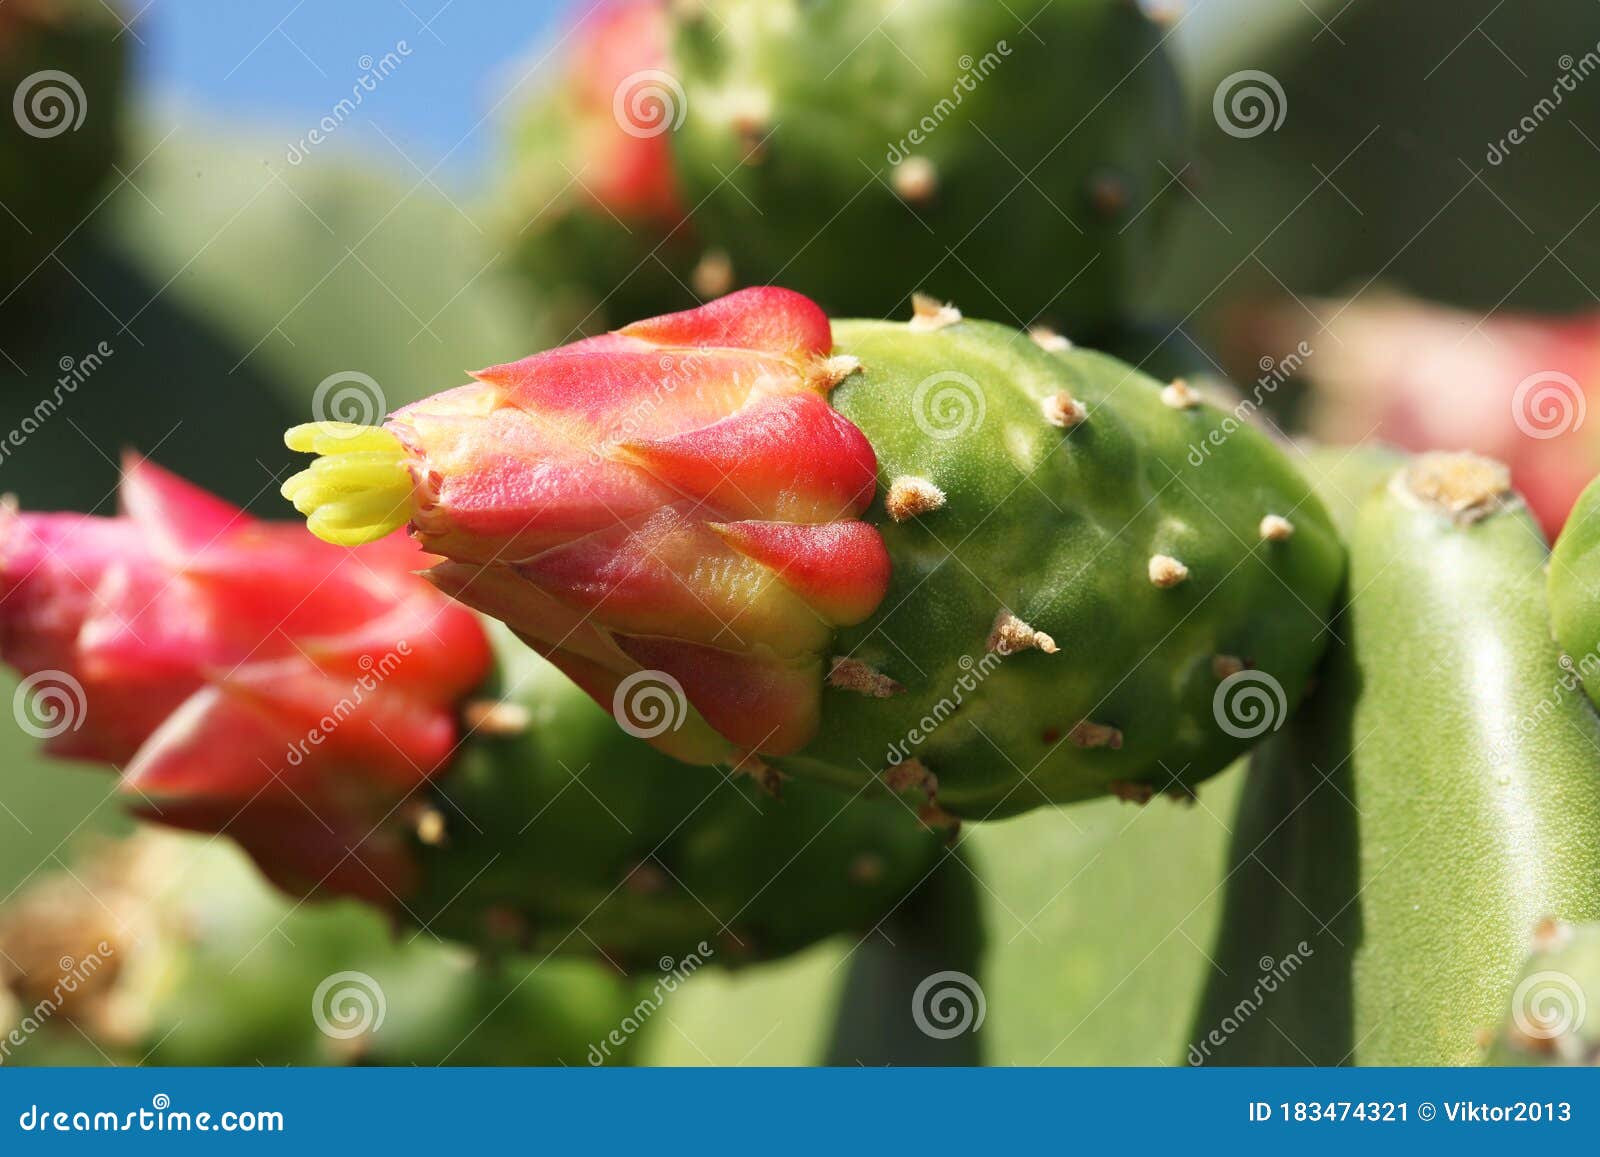 opuntia ficus-indica cactus blooming